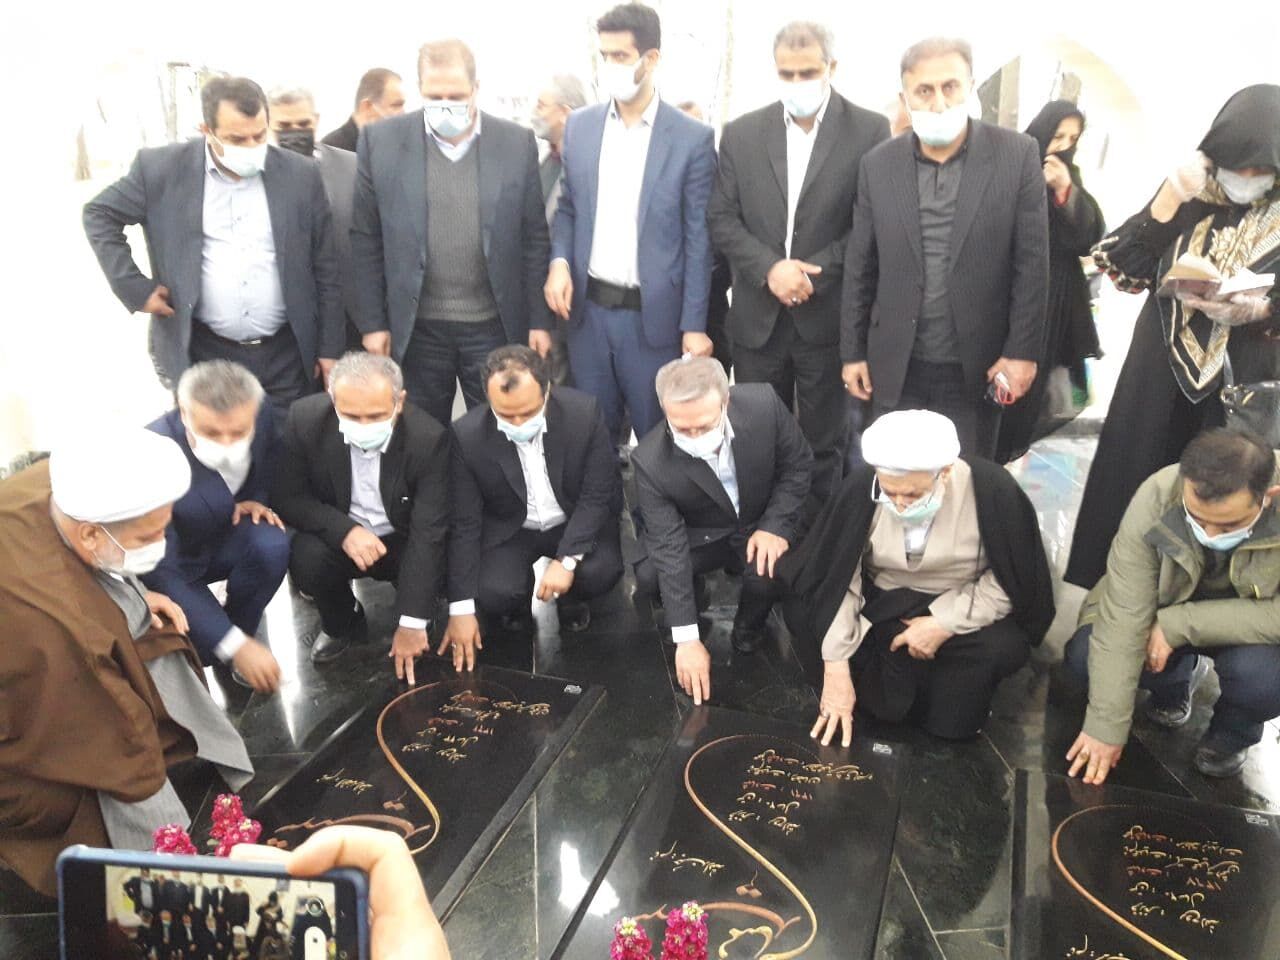 وزیر اقتصاد با حضور در مزار شهدای گمنام در نوشهر و ادای احترام برنامه هایش را آغاز کرد